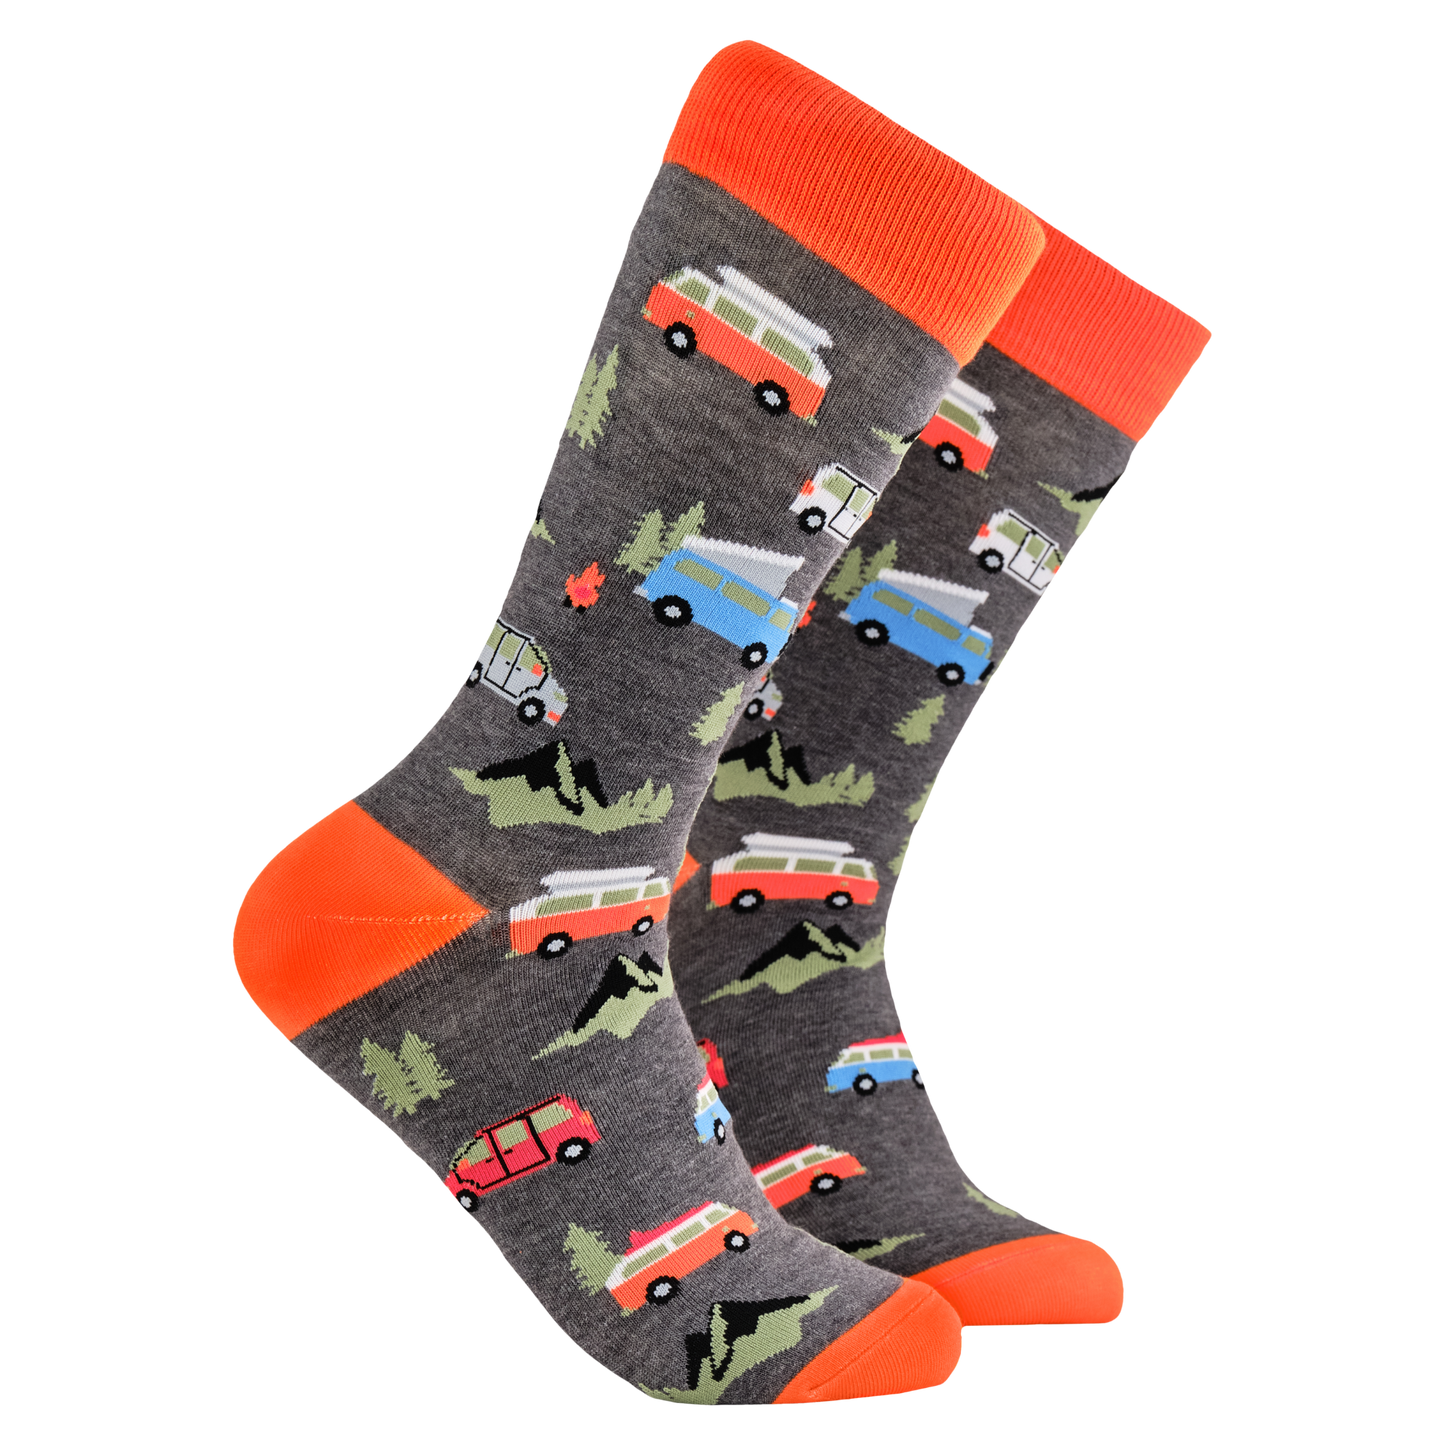 Camper Van Socks - Van Life. A pair of socks depicting red and blue vintage camper van. Grey legs, orange cuff, heel and toe.